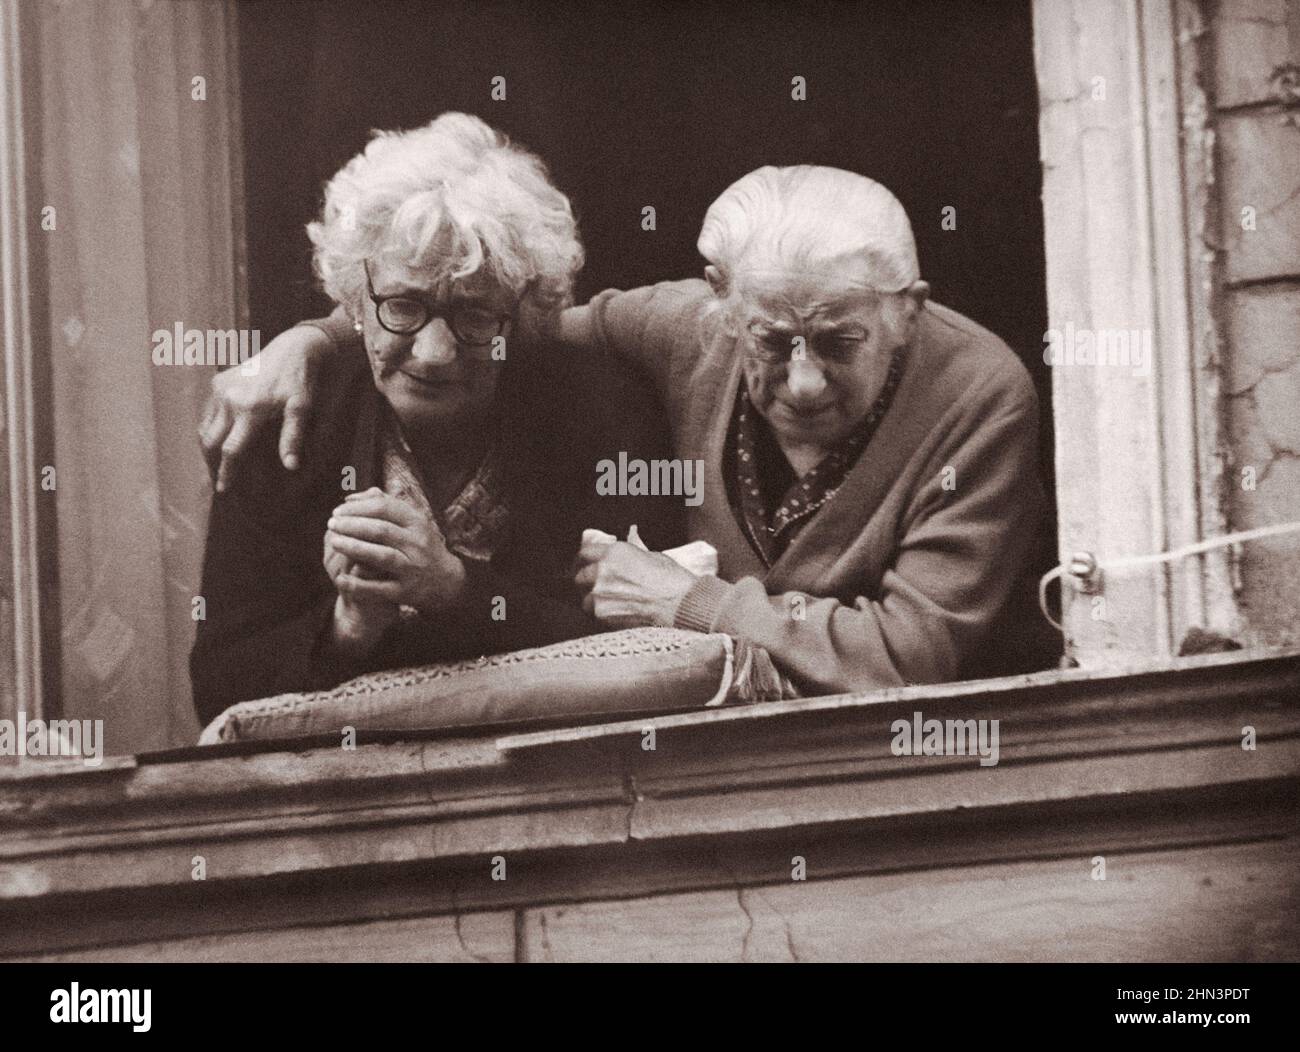 Foto vintage de la crisis de Berlín de 1961: Construyendo el Muro. Dos mujeres en el lado oriental del muro de Berlín muestran sus emociones de anhelo de libertad Foto de stock